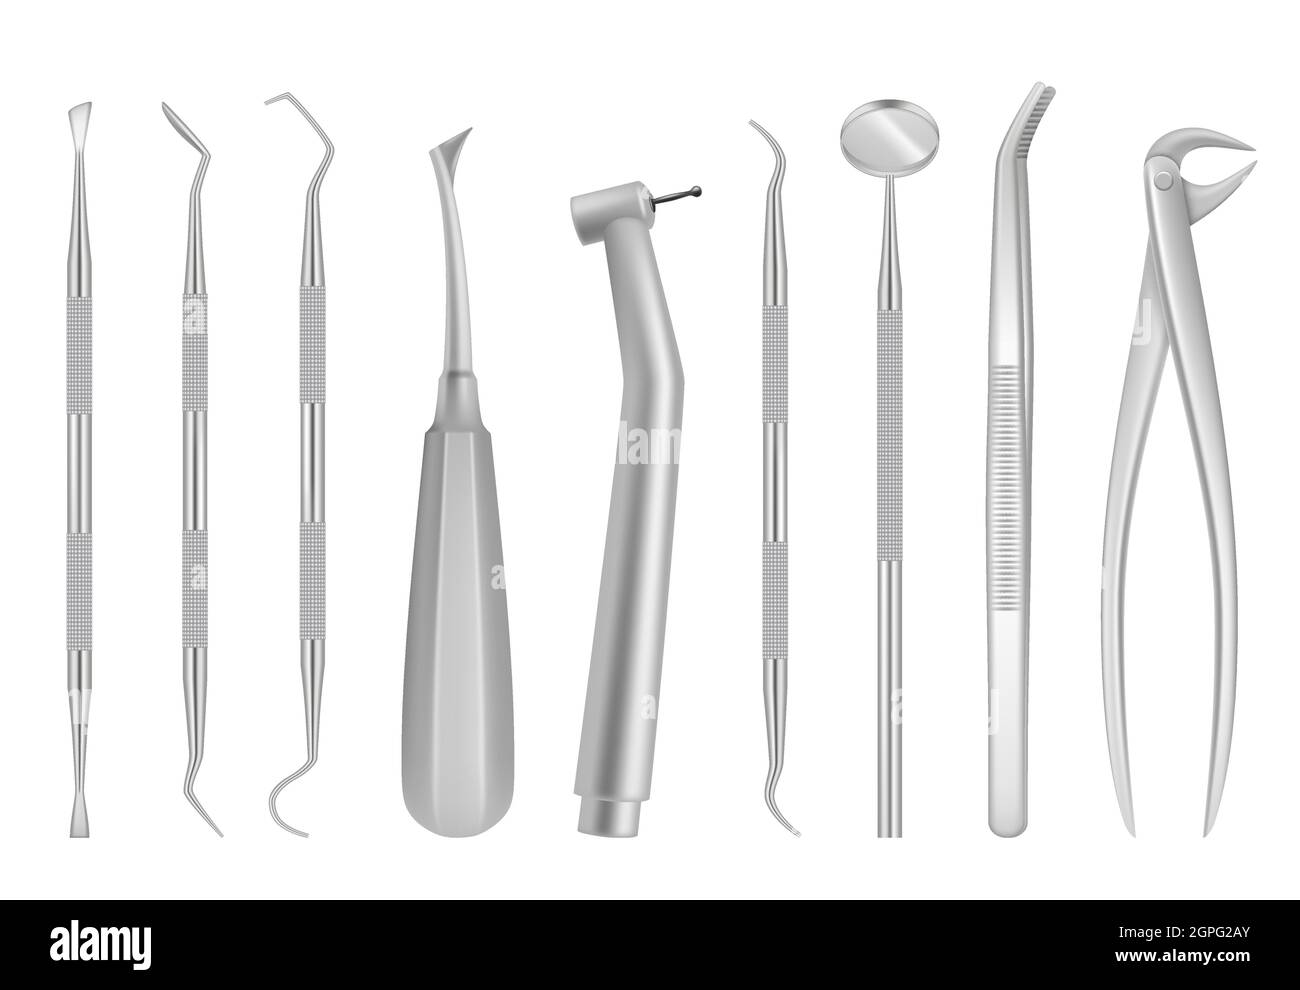 Strumenti per la clinica dentale. Articoli medici per dentisti ispezione orale vettore di denti strumenti di cromo realistico Illustrazione Vettoriale